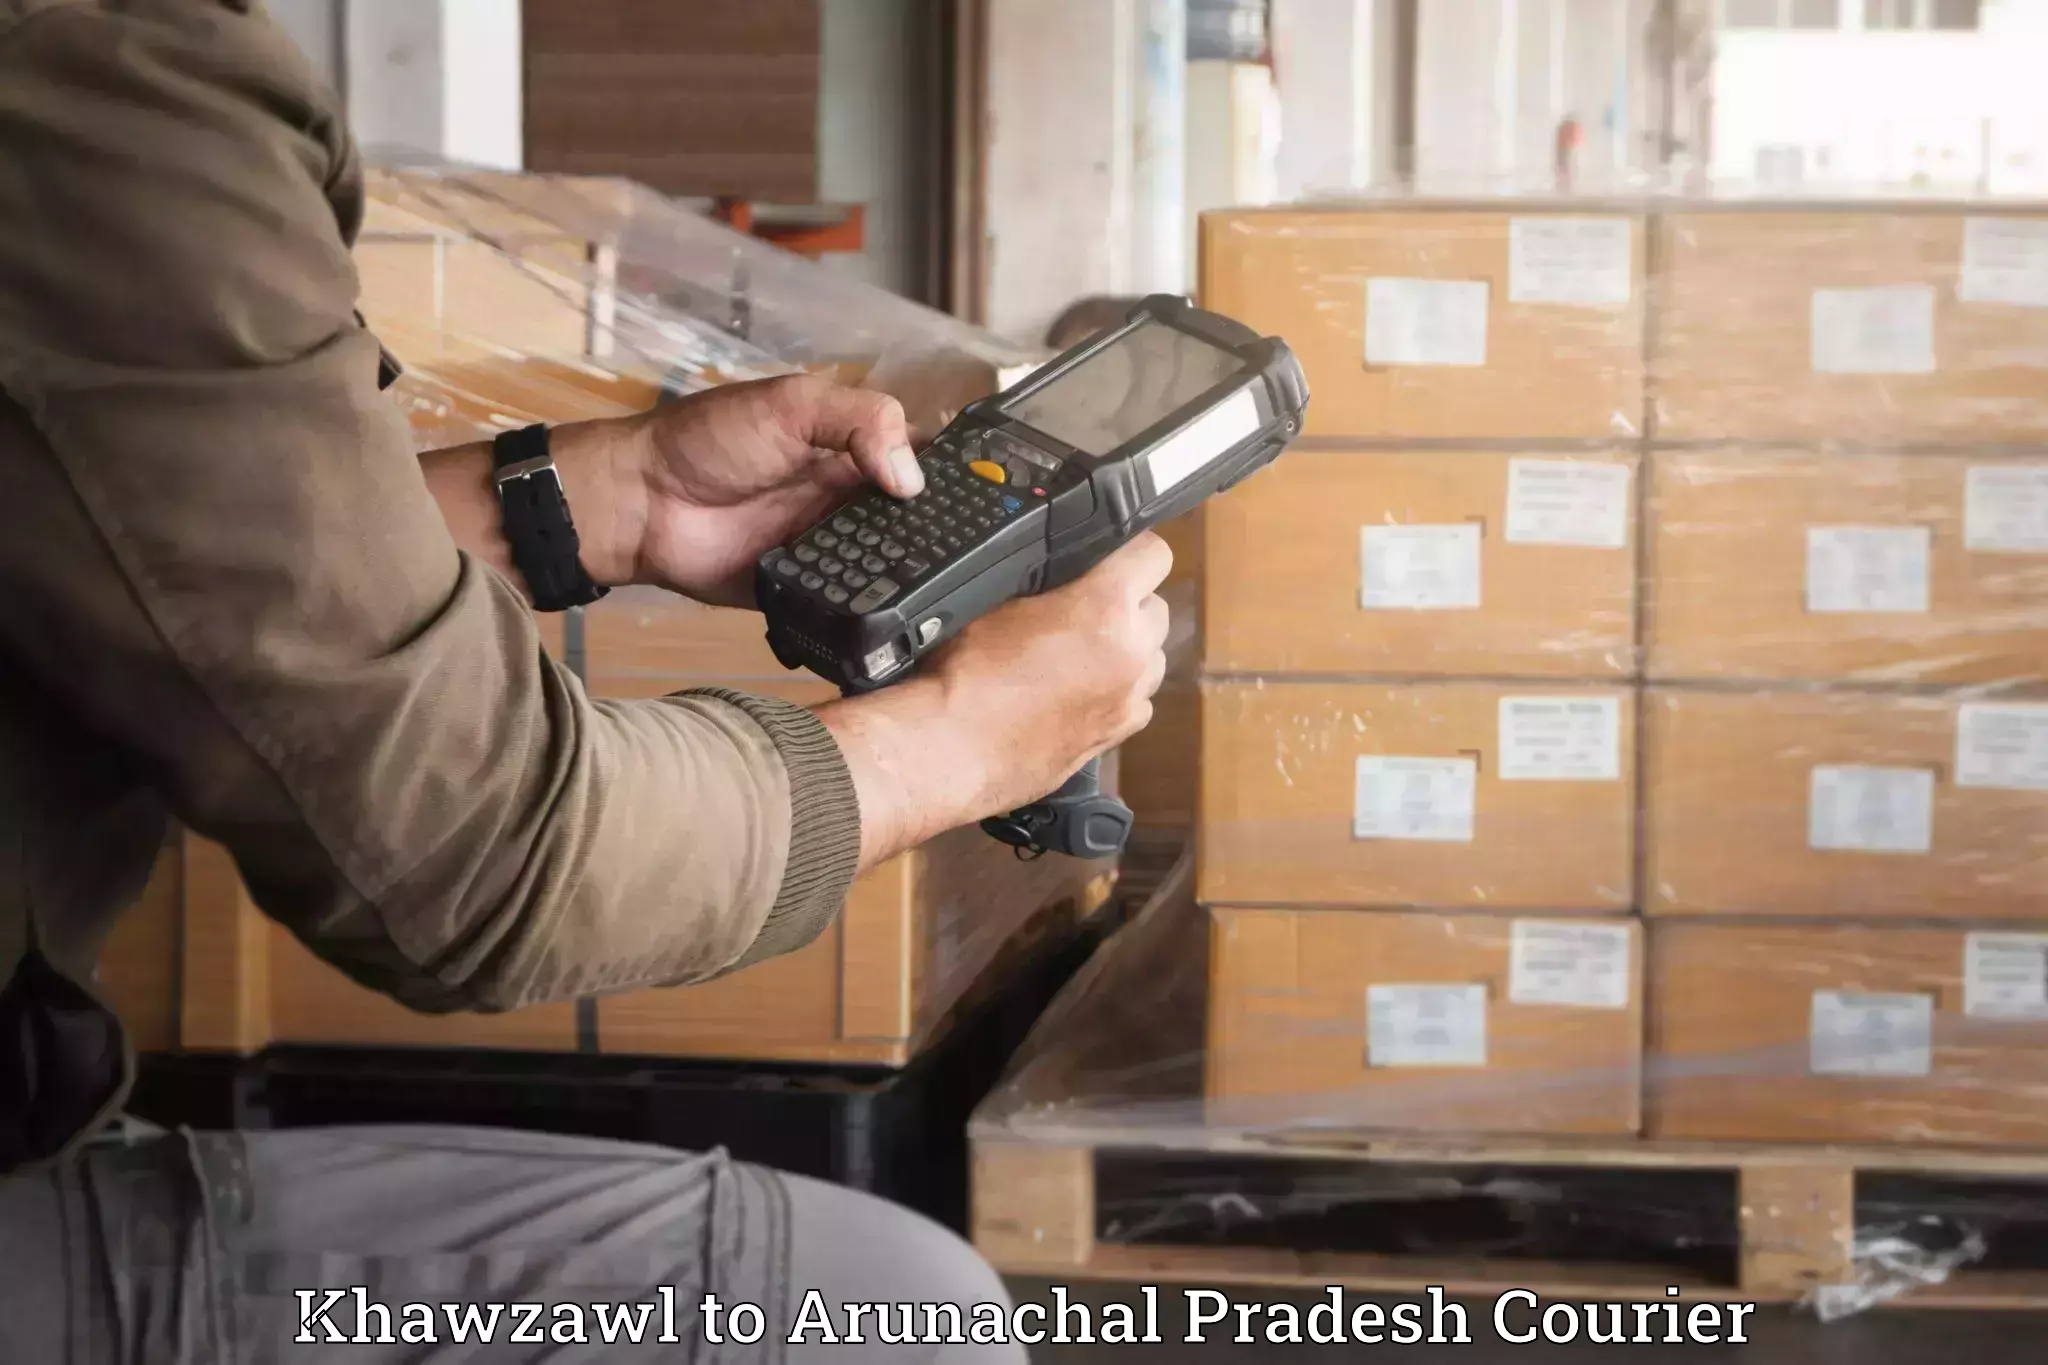 Quality moving services Khawzawl to Arunachal Pradesh